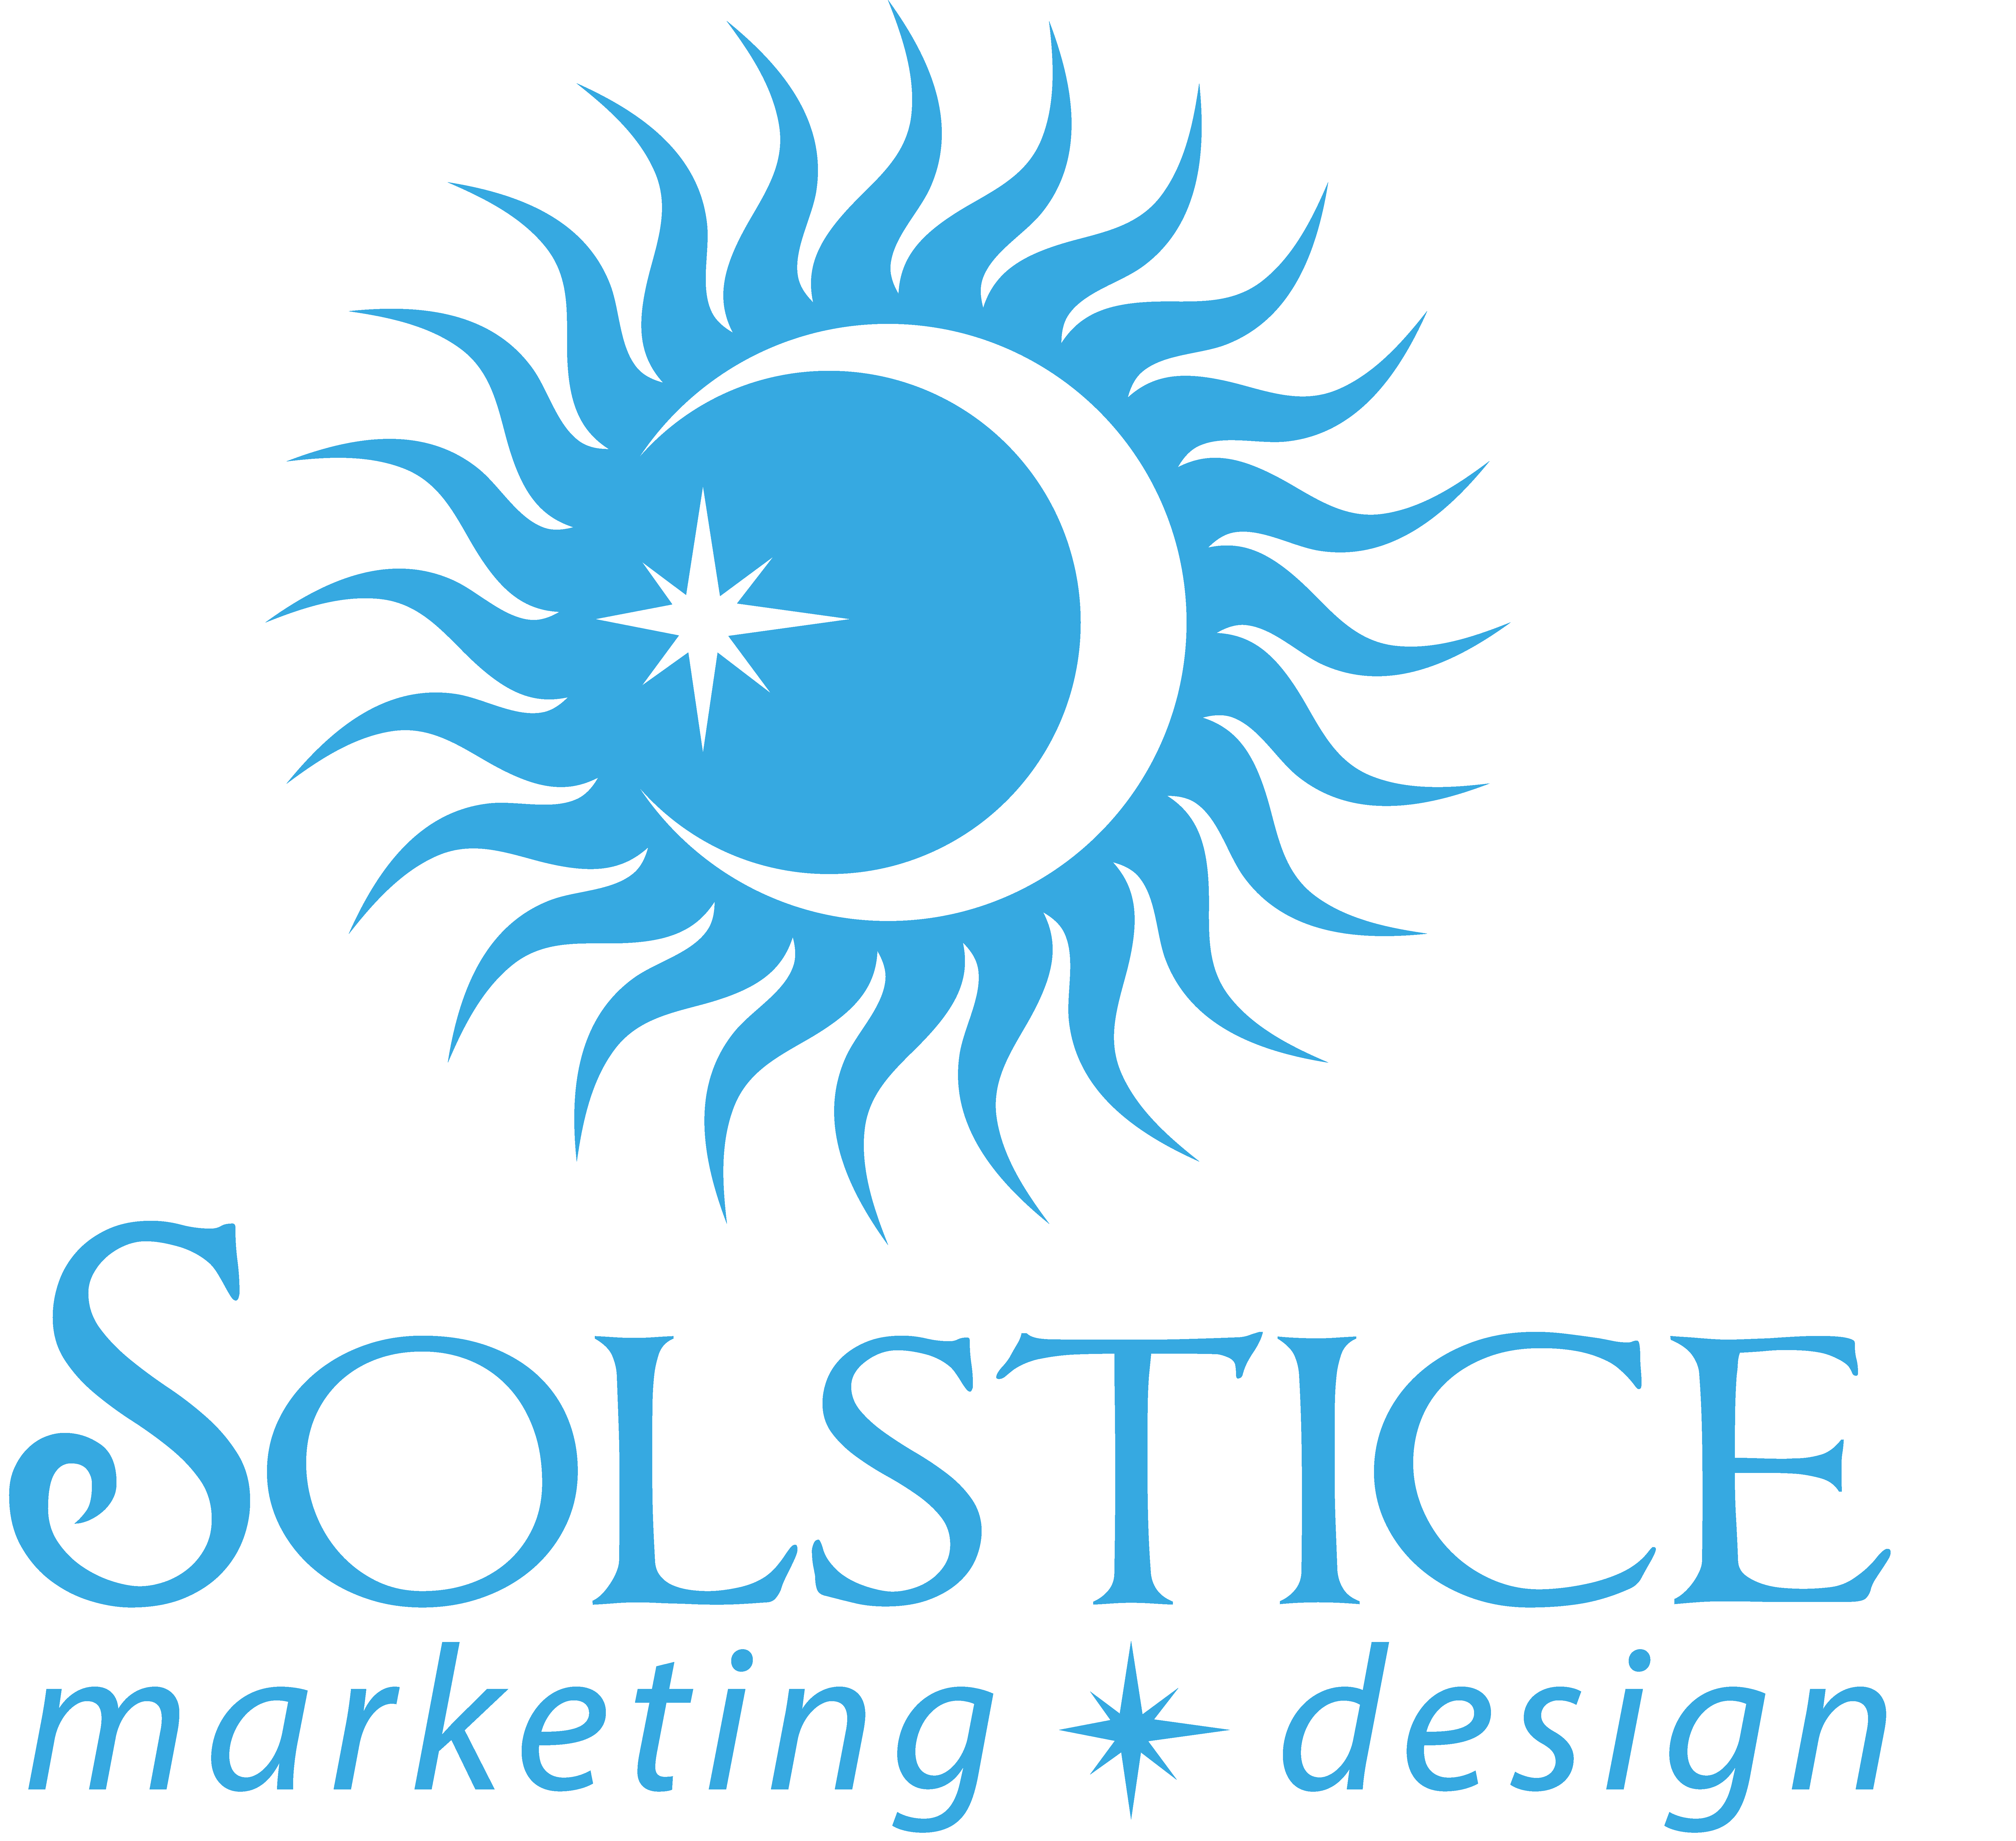 Solstice Marketing Design